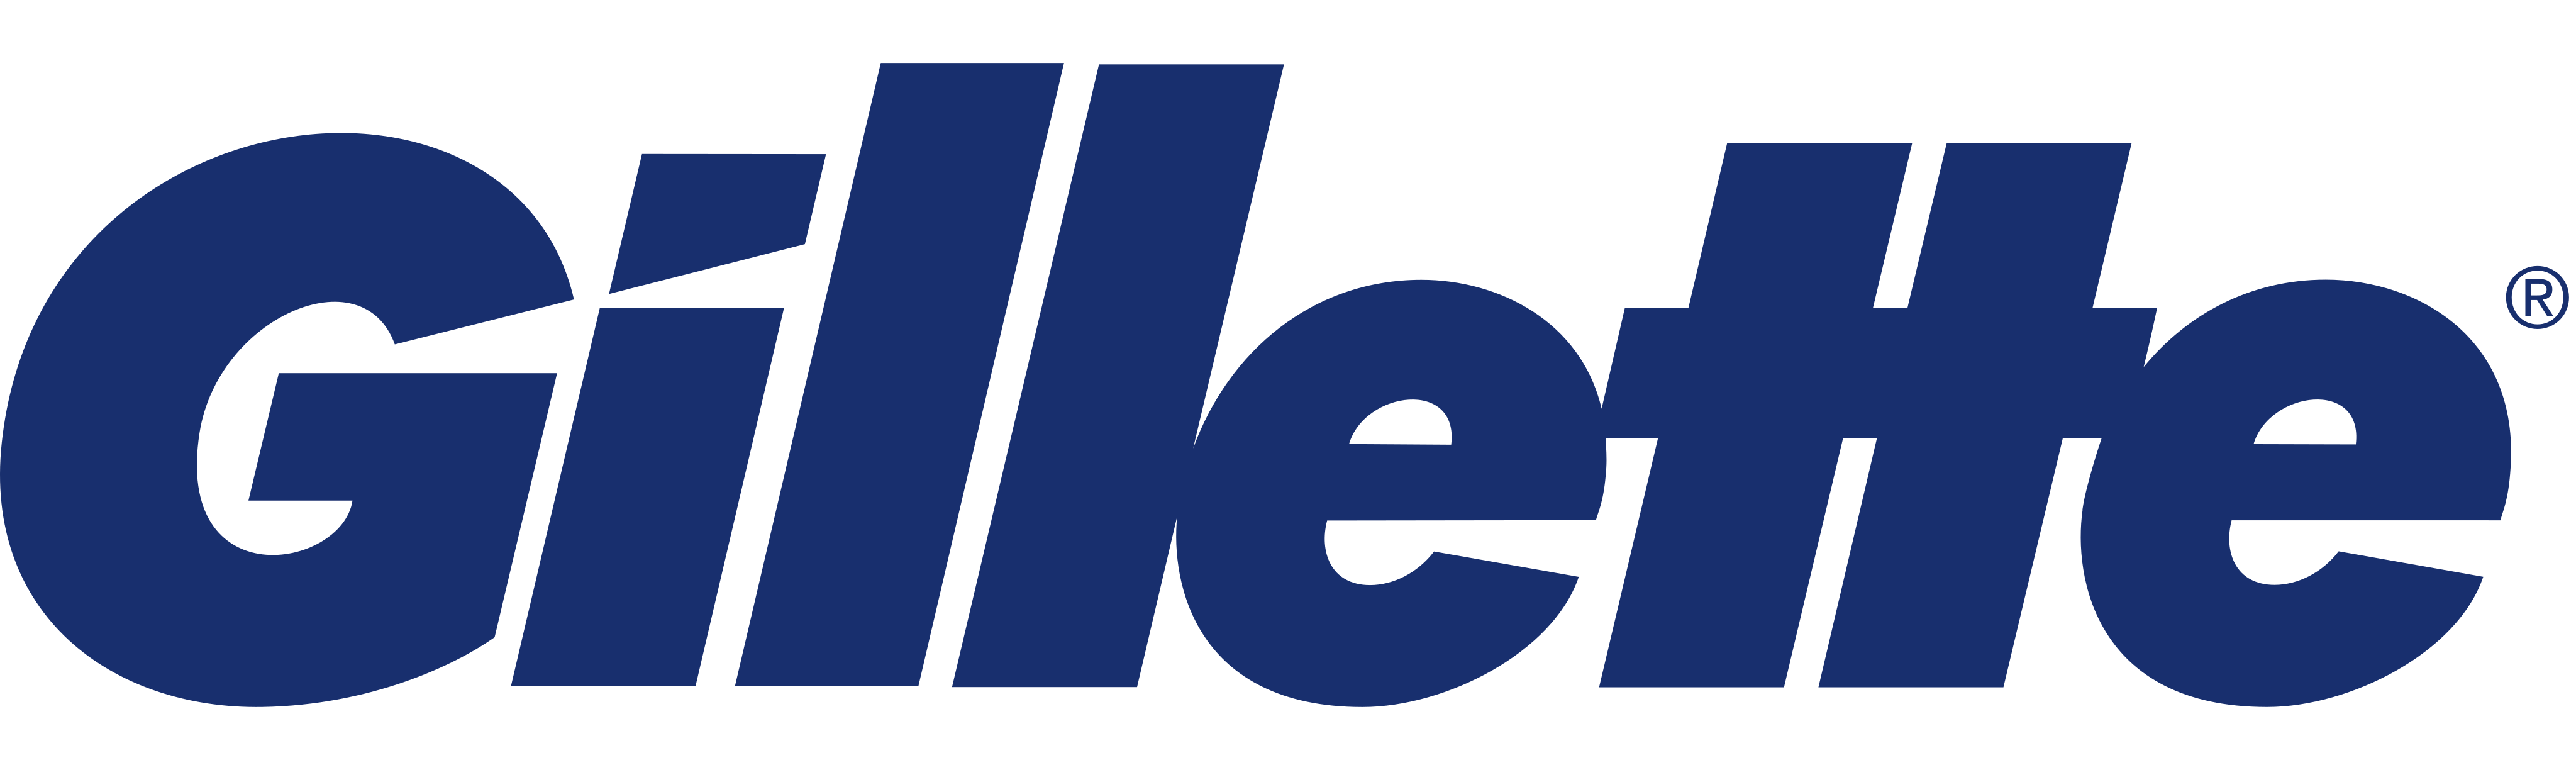 Gillette Logo Transparent Images